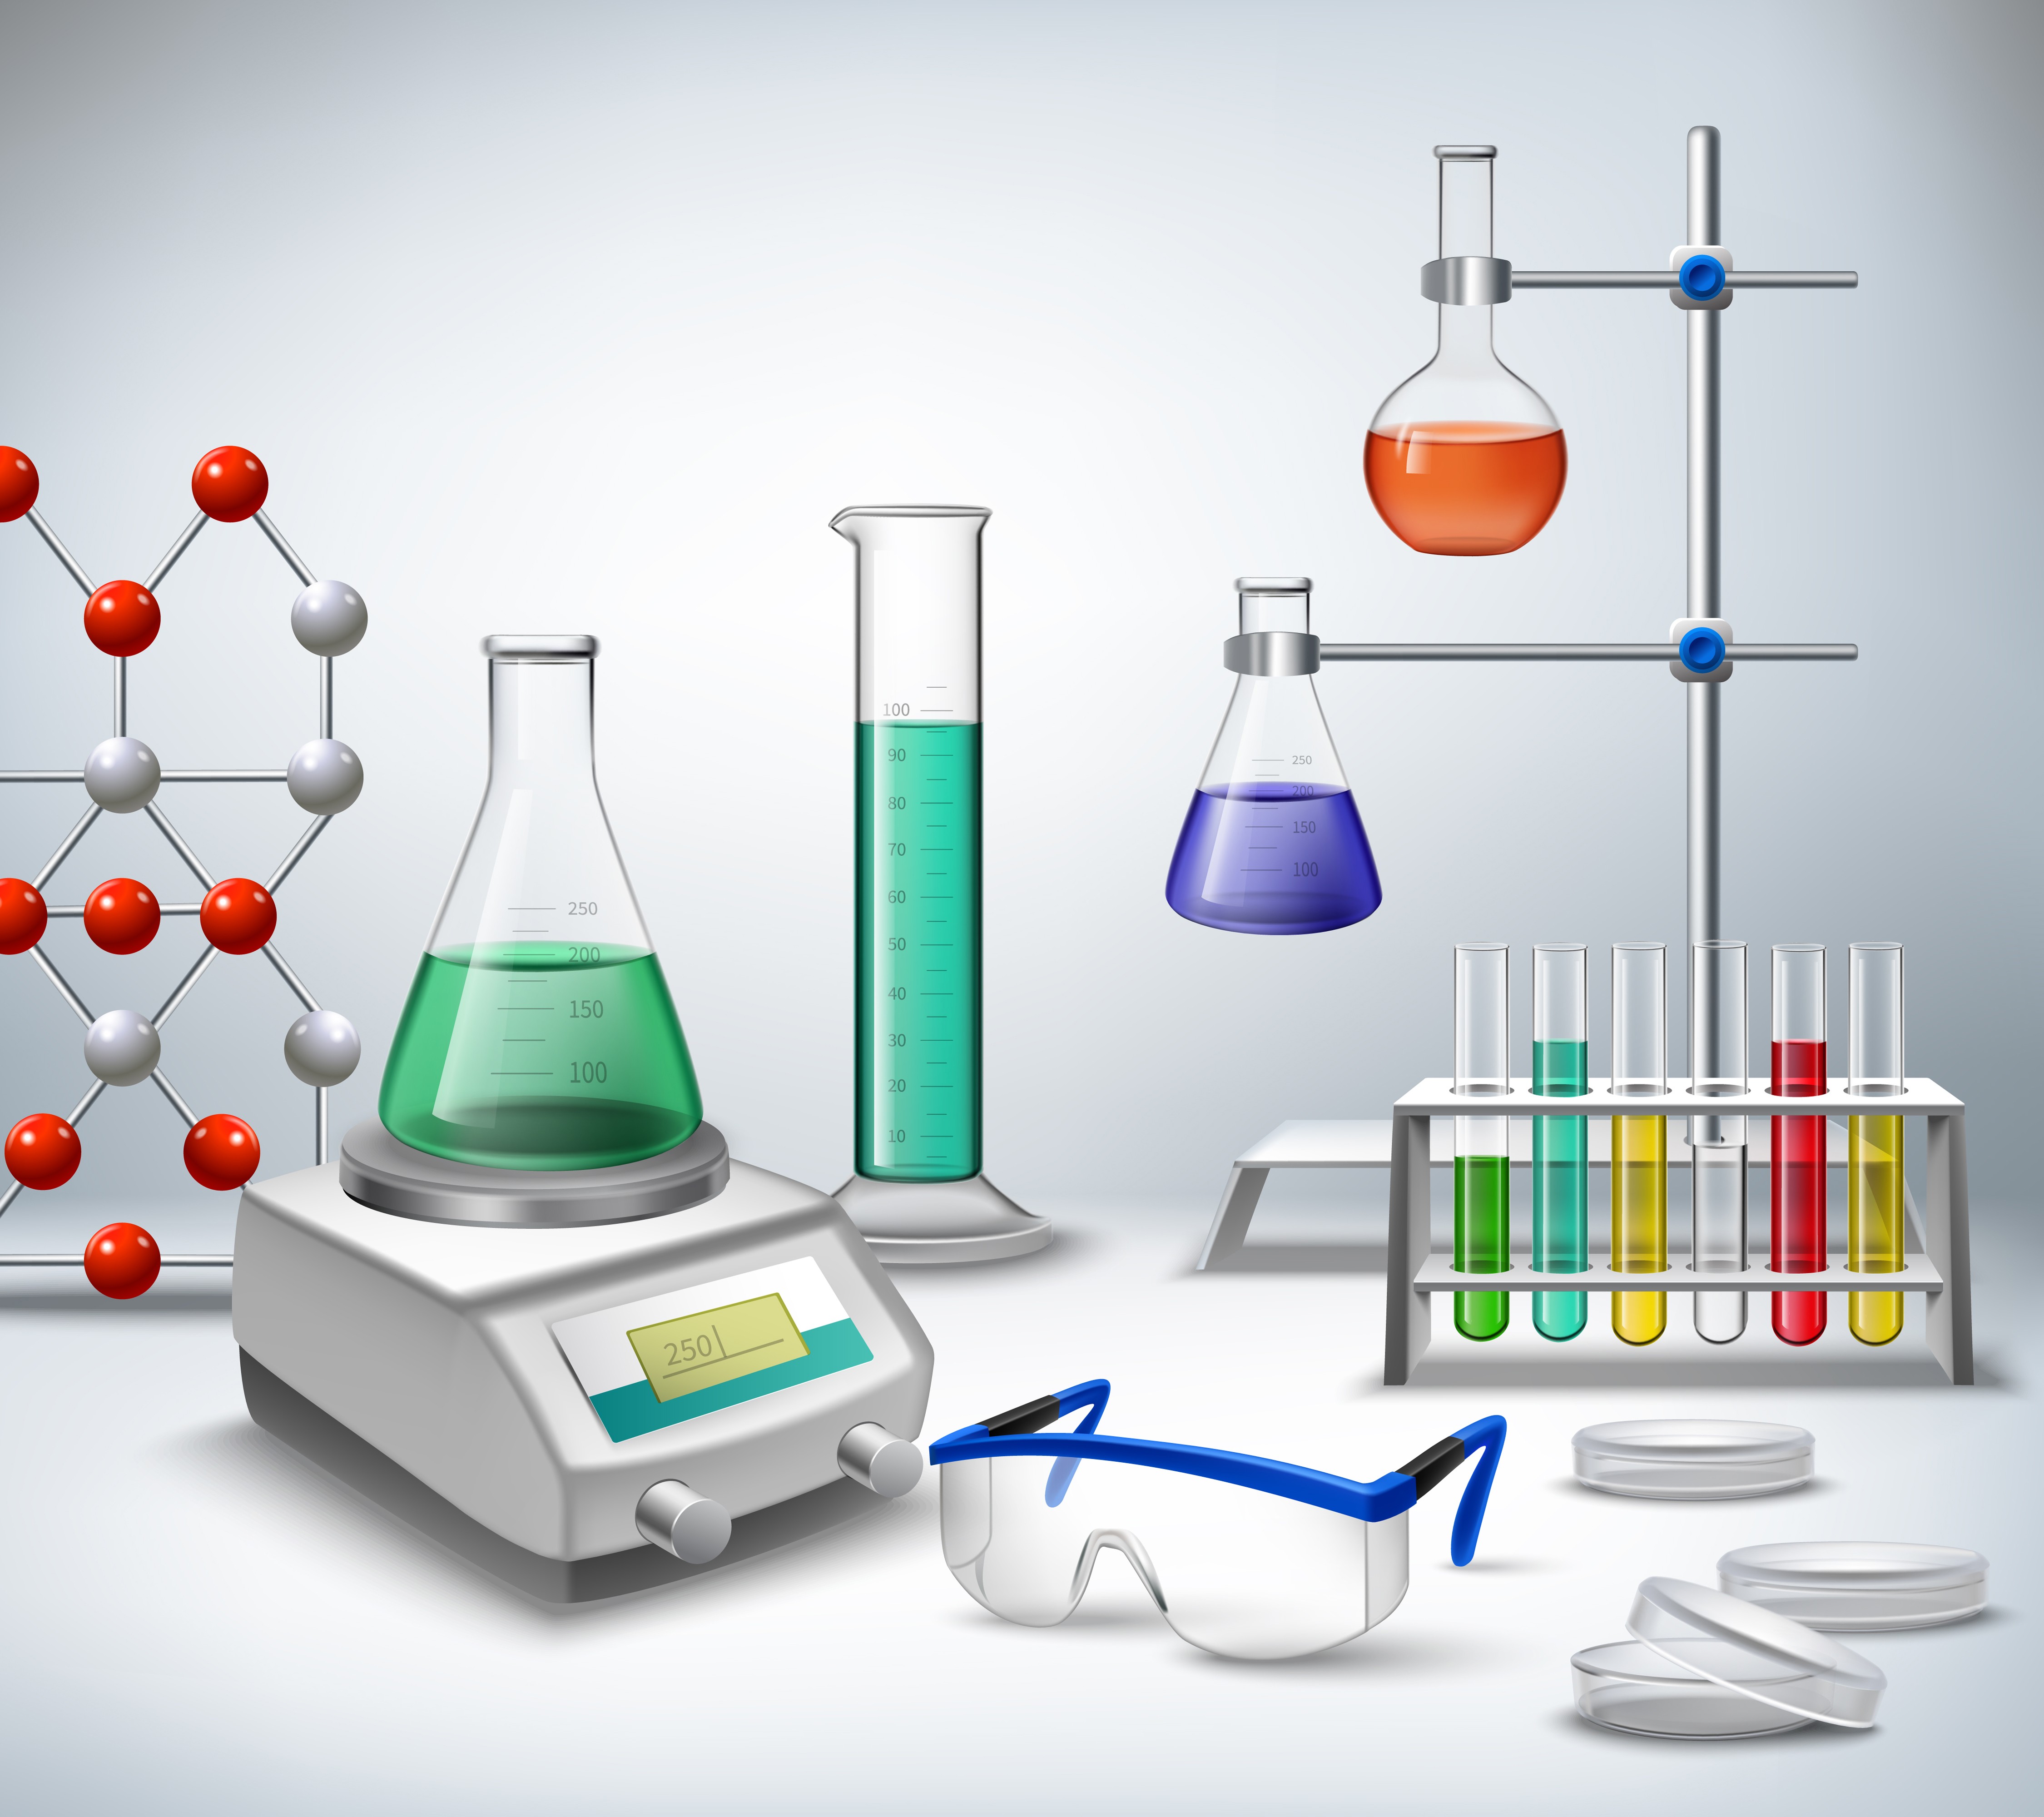 L'importance des laboratoires de sciences dans les écoles et leur rôle dans le développement des compétences scientifiques des étudiants.